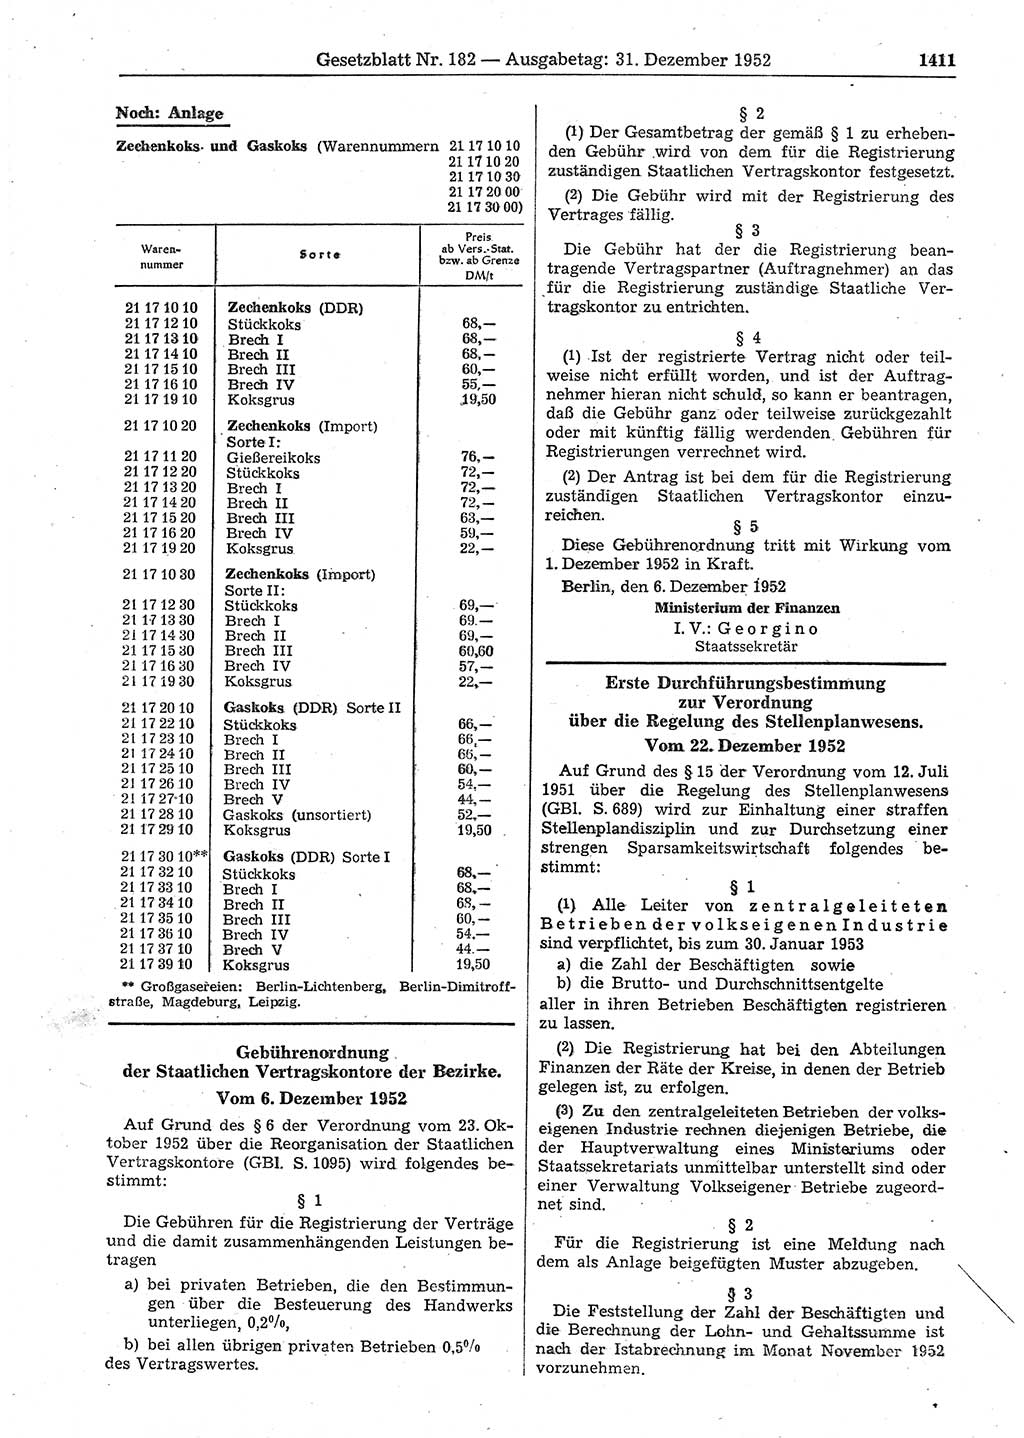 Gesetzblatt (GBl.) der Deutschen Demokratischen Republik (DDR) 1952, Seite 1411 (GBl. DDR 1952, S. 1411)